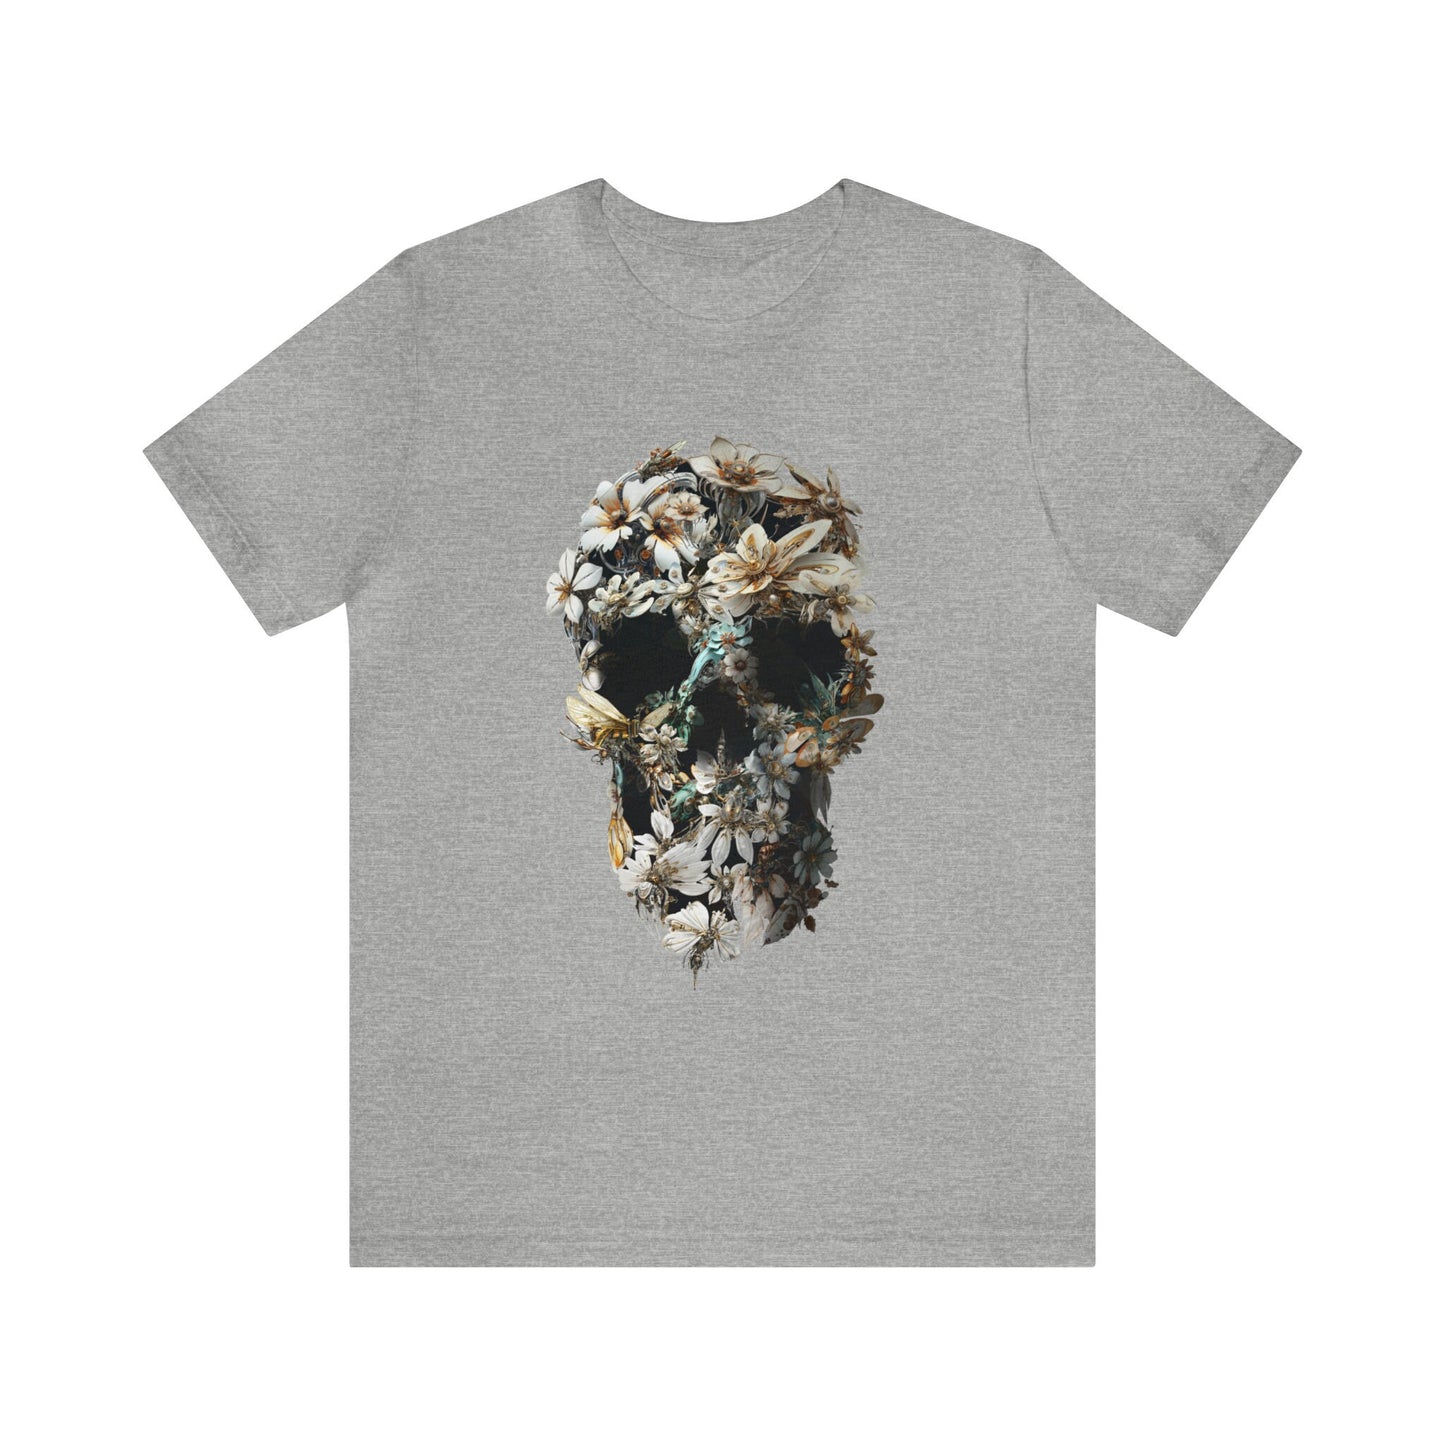 Skull Men's T-shirt, Bloom Skull Mens T Shirt, Skull Art Print Gift For Him